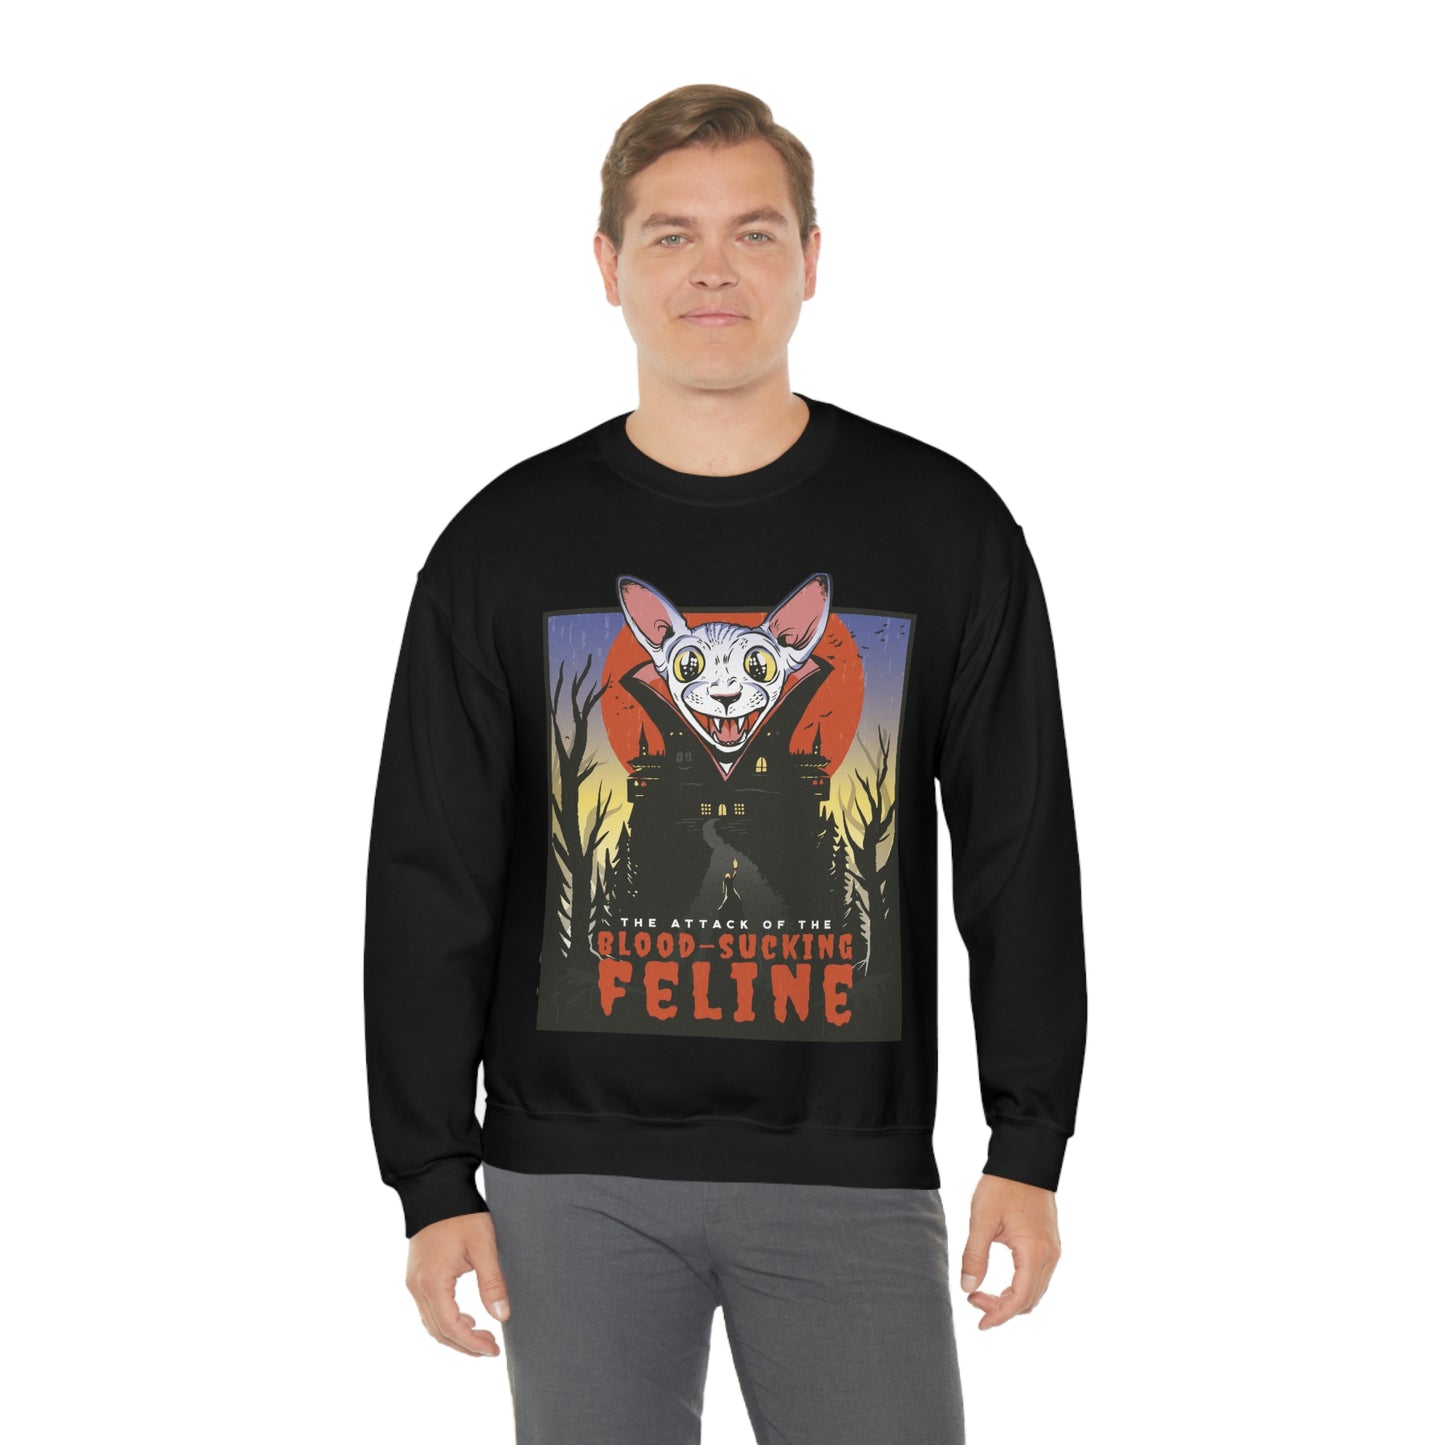 Goth Aesthetic Sweatshirt